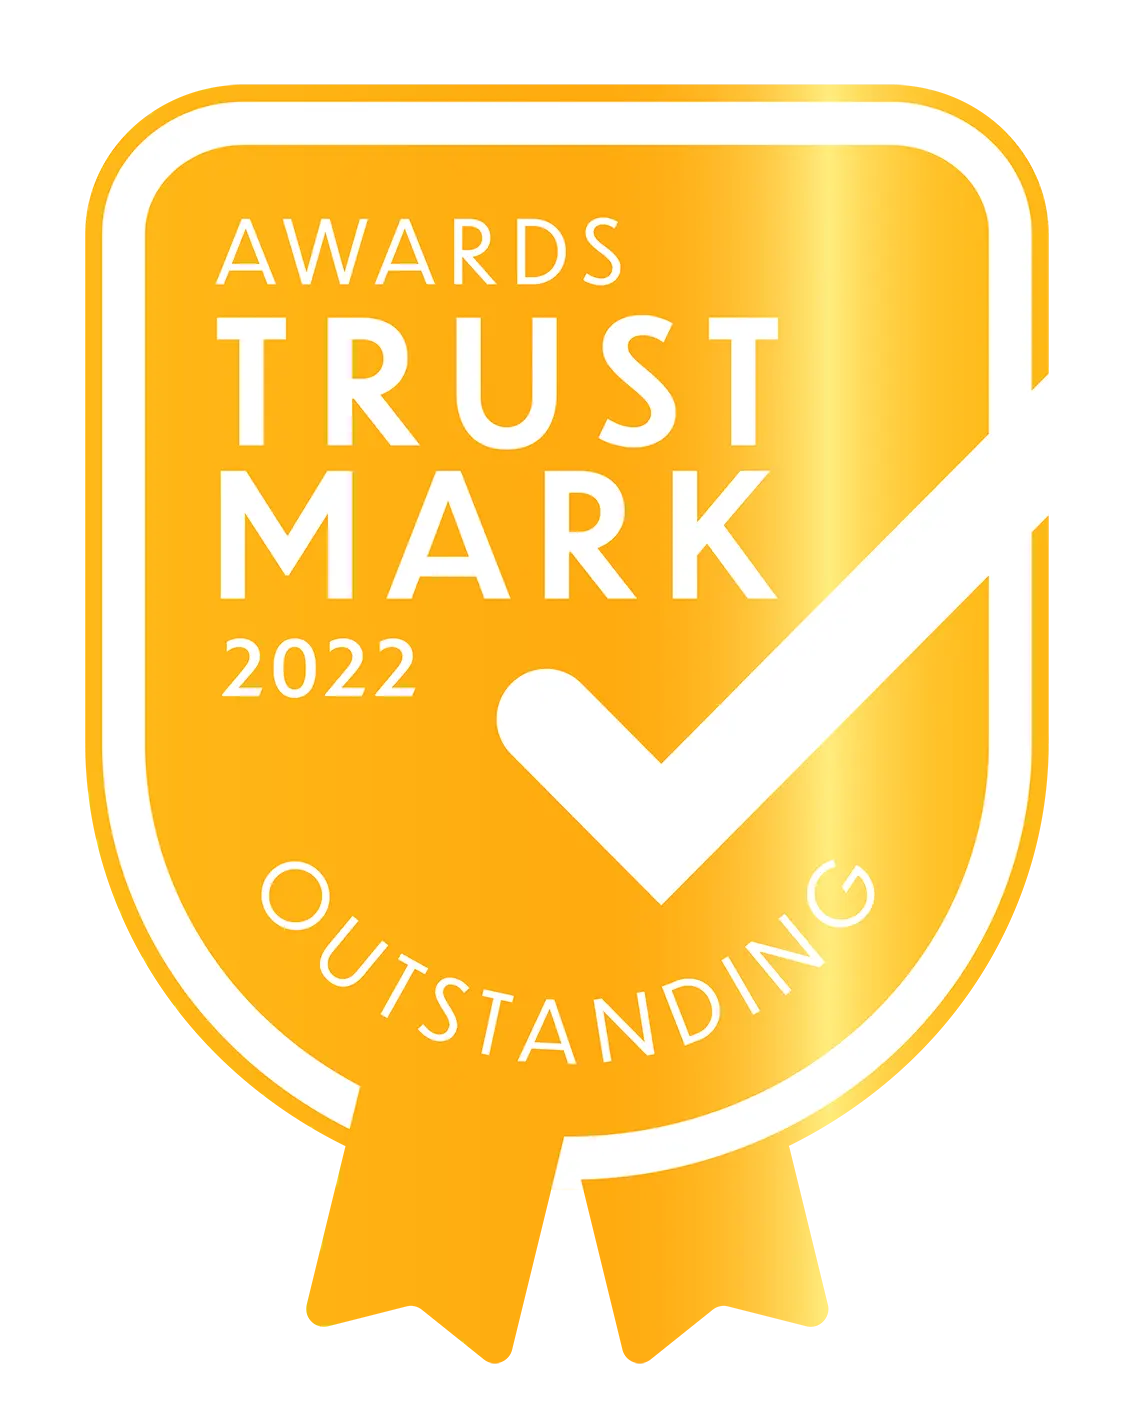 awards trust mark logo outstanding